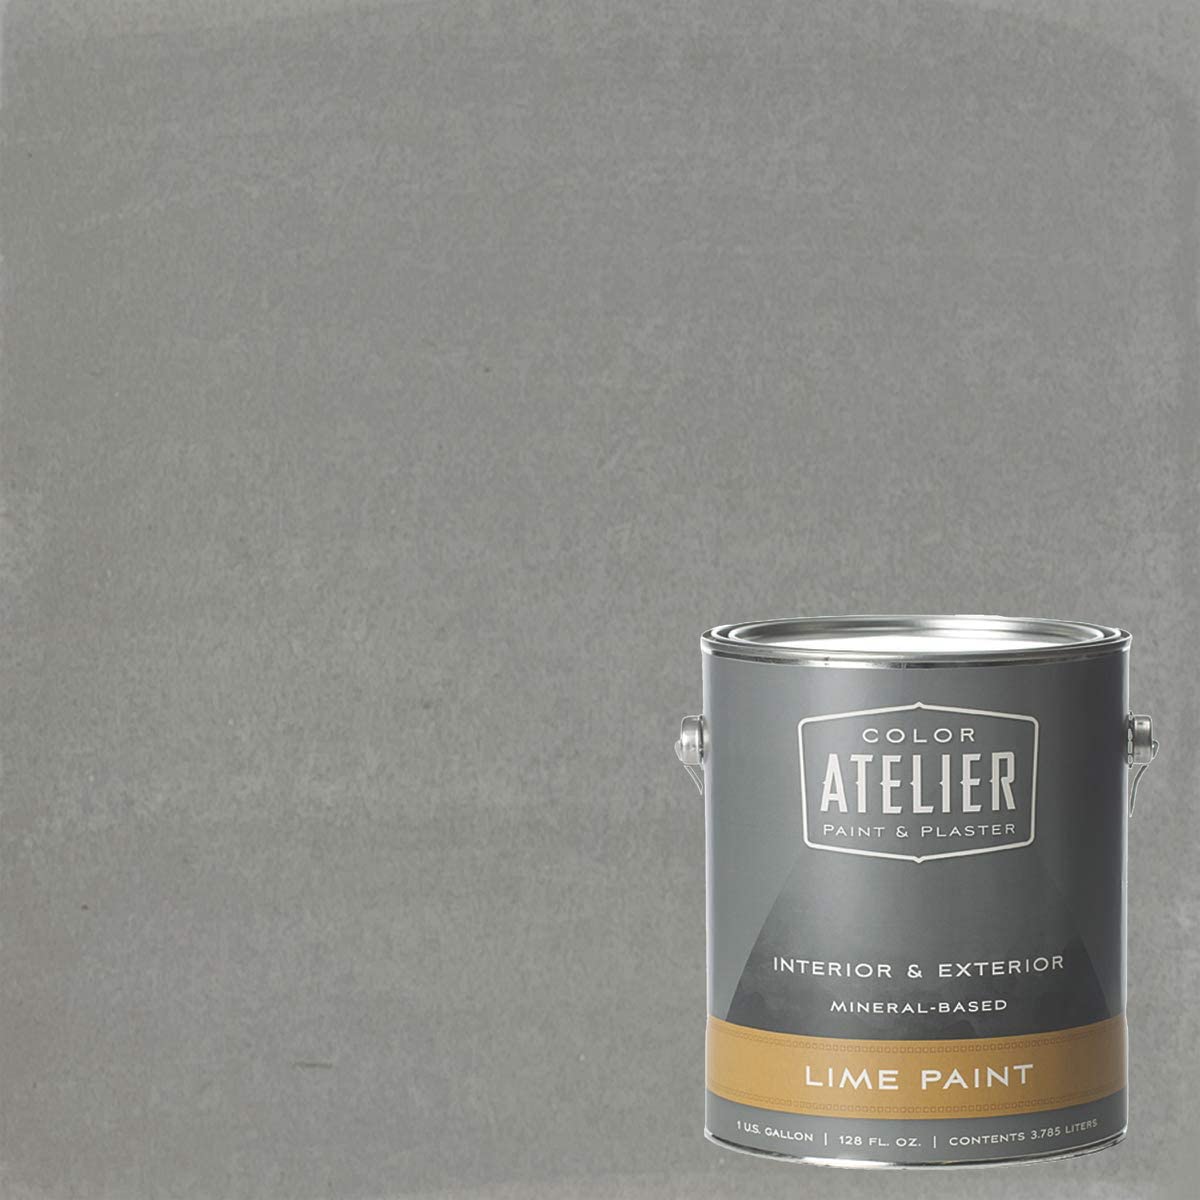 Color Atelier lime paint